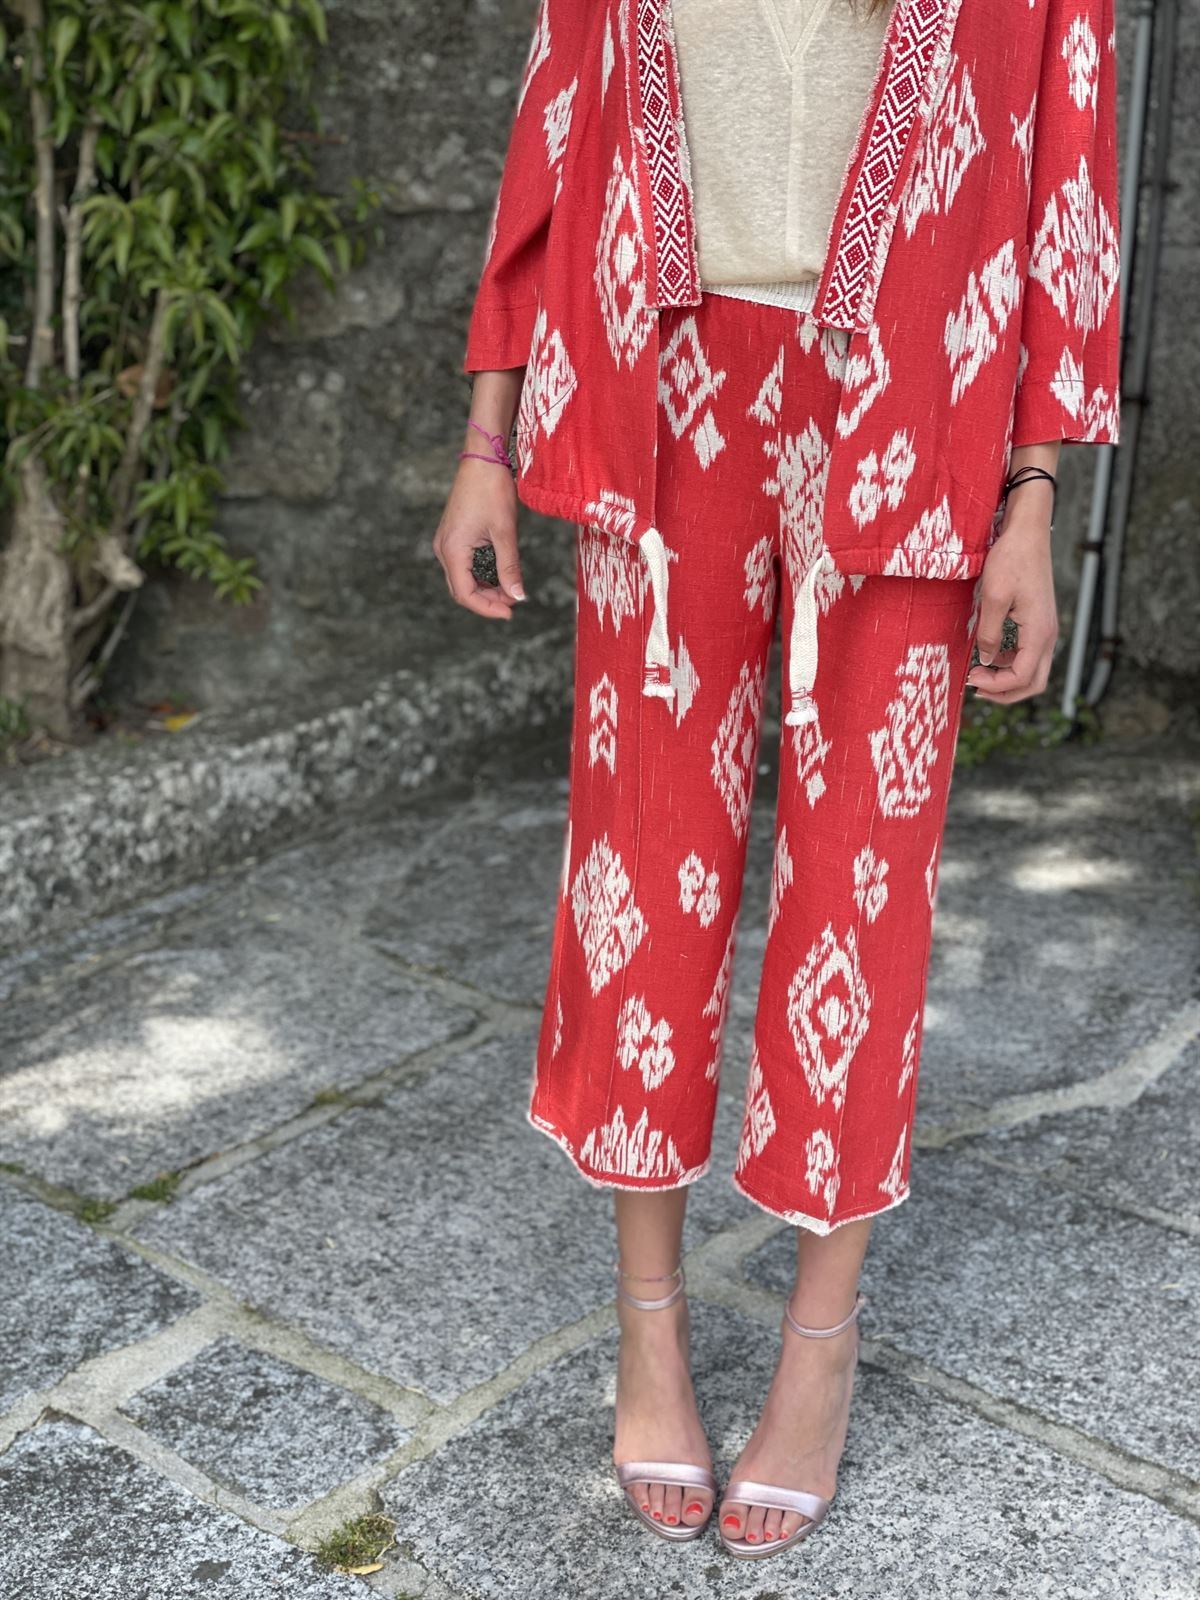 Pantalon Oky culotte etnico rojo - Imagen 3